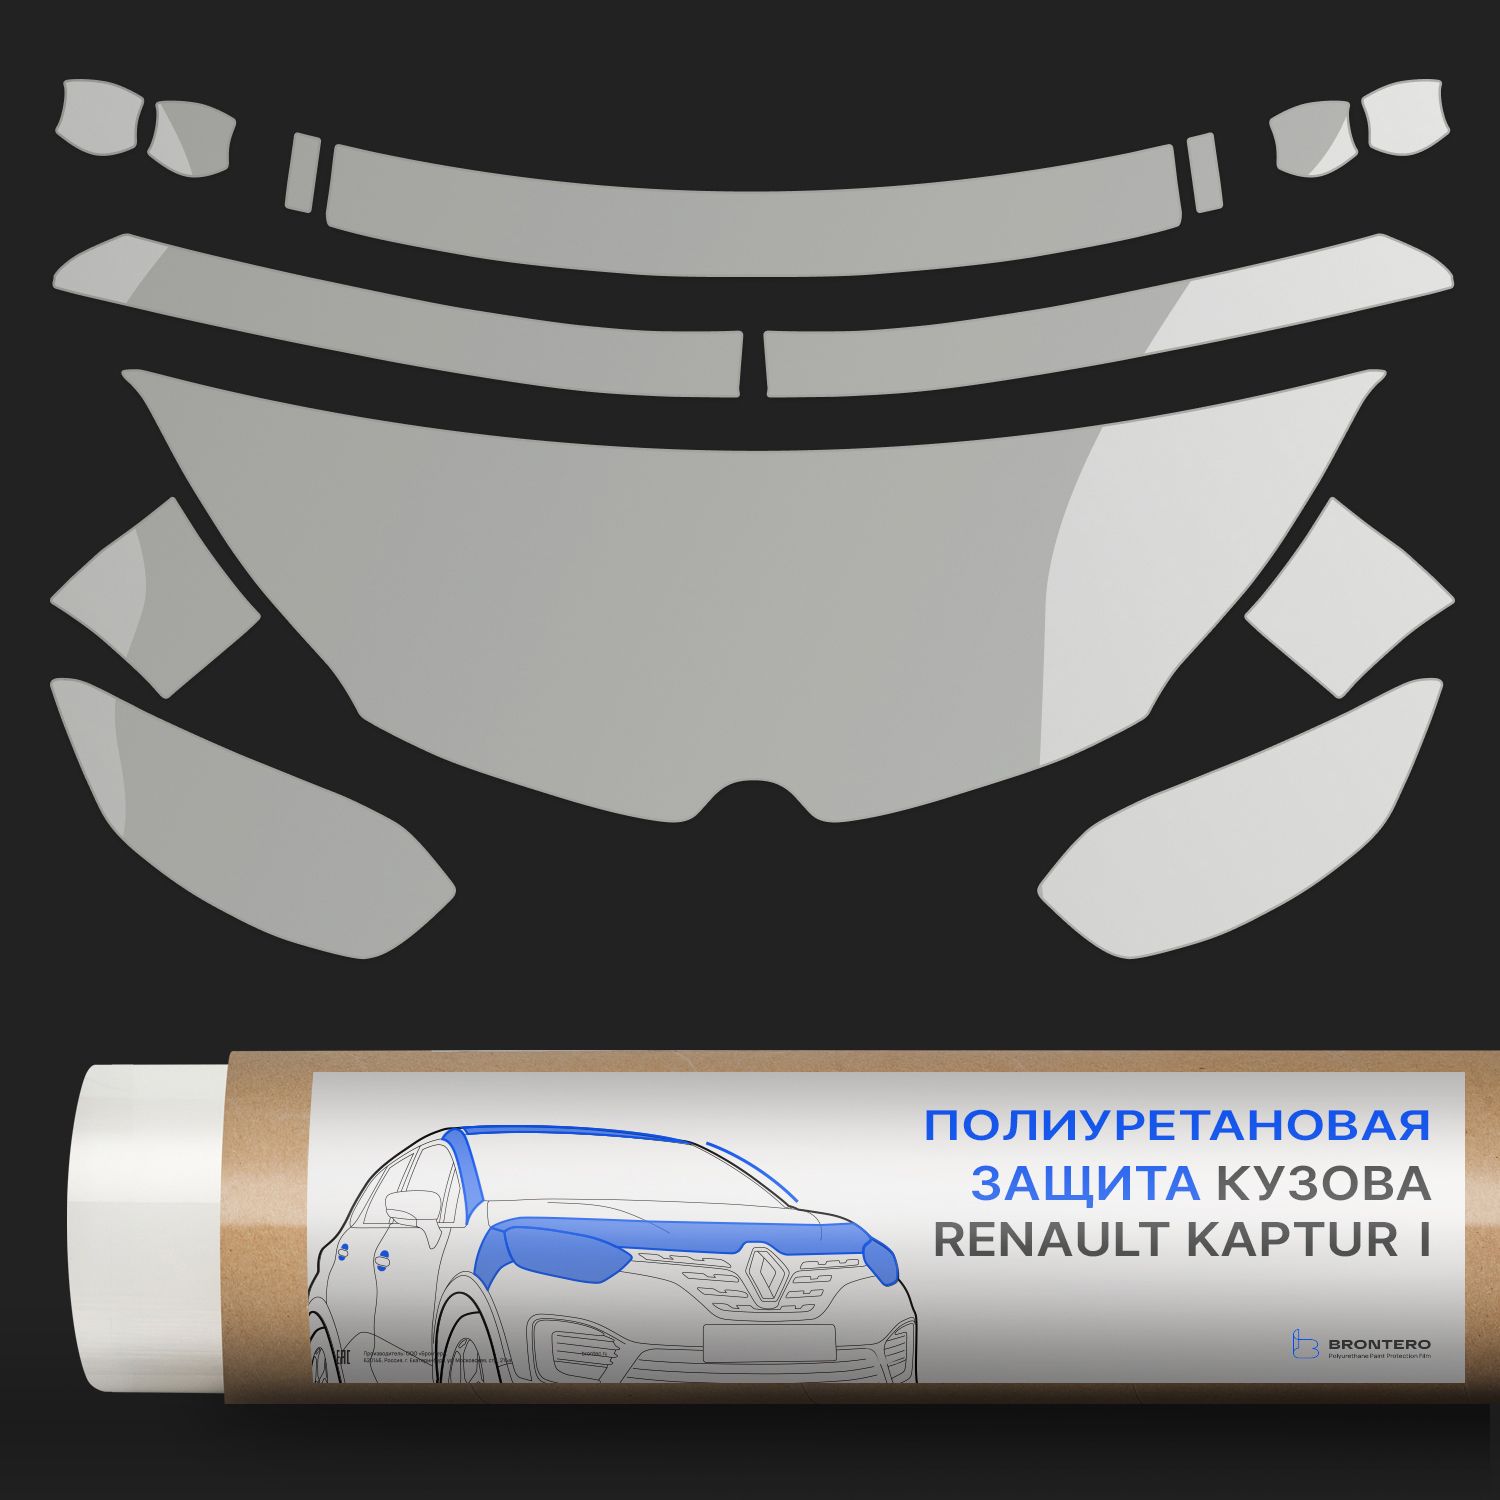 Комплект полиуретановых пленок Brontero для защиты Renault Kaptur